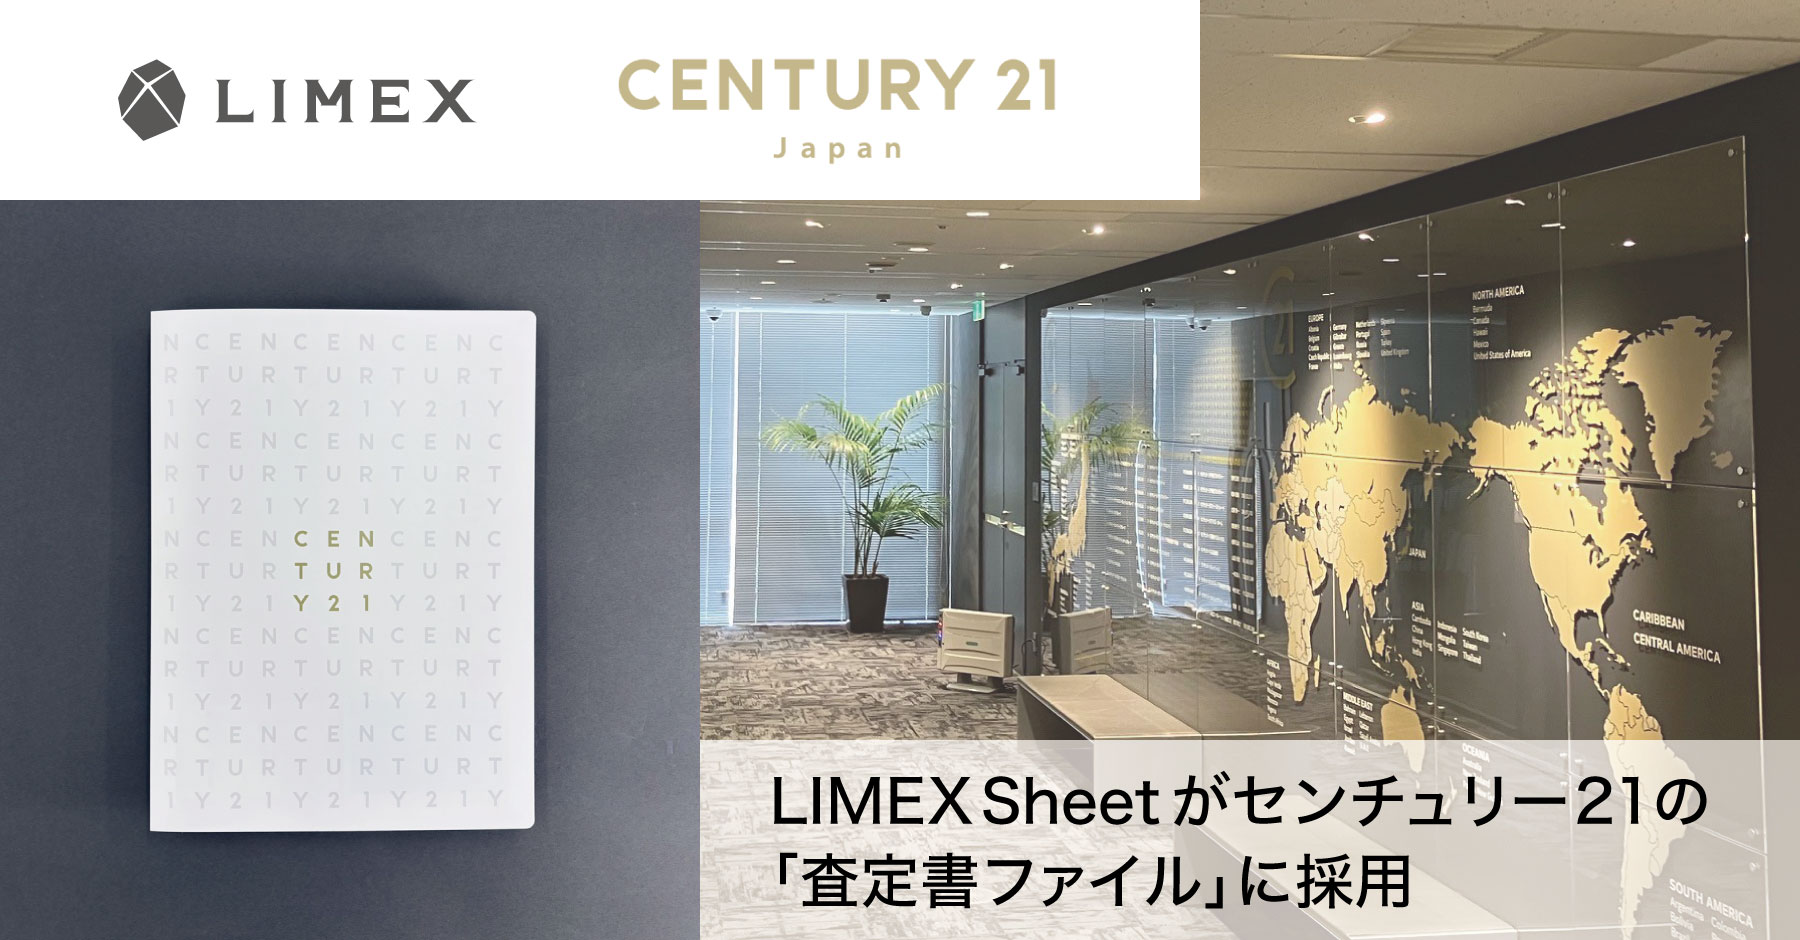 環境配慮型素材の「LIMEX Sheet」が全国約1,000 店舗の加盟店を展開 